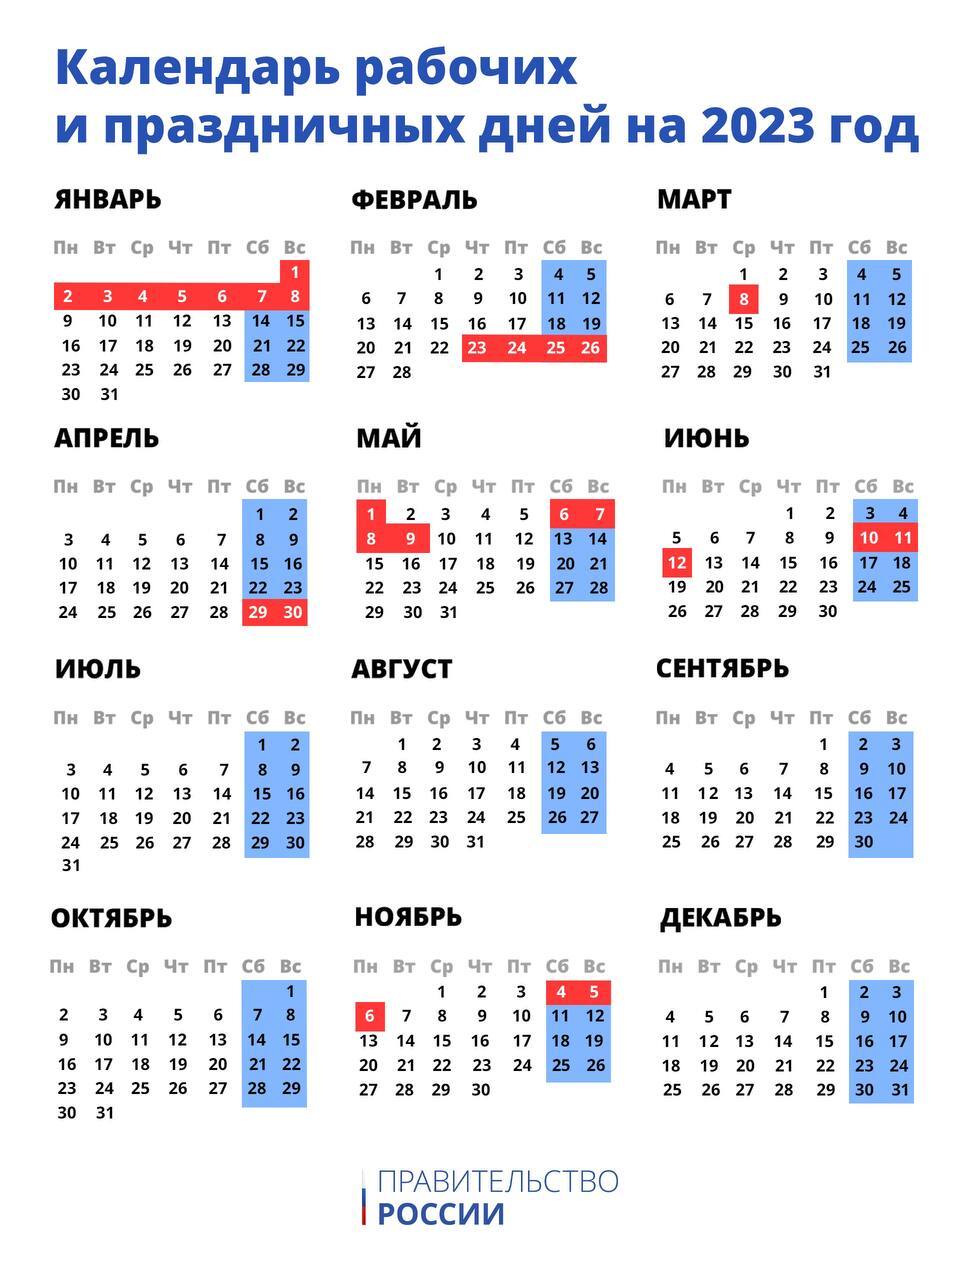 Производственный календарь на следующий год утвердили. Изучаем даты, выделенные красным цветом.